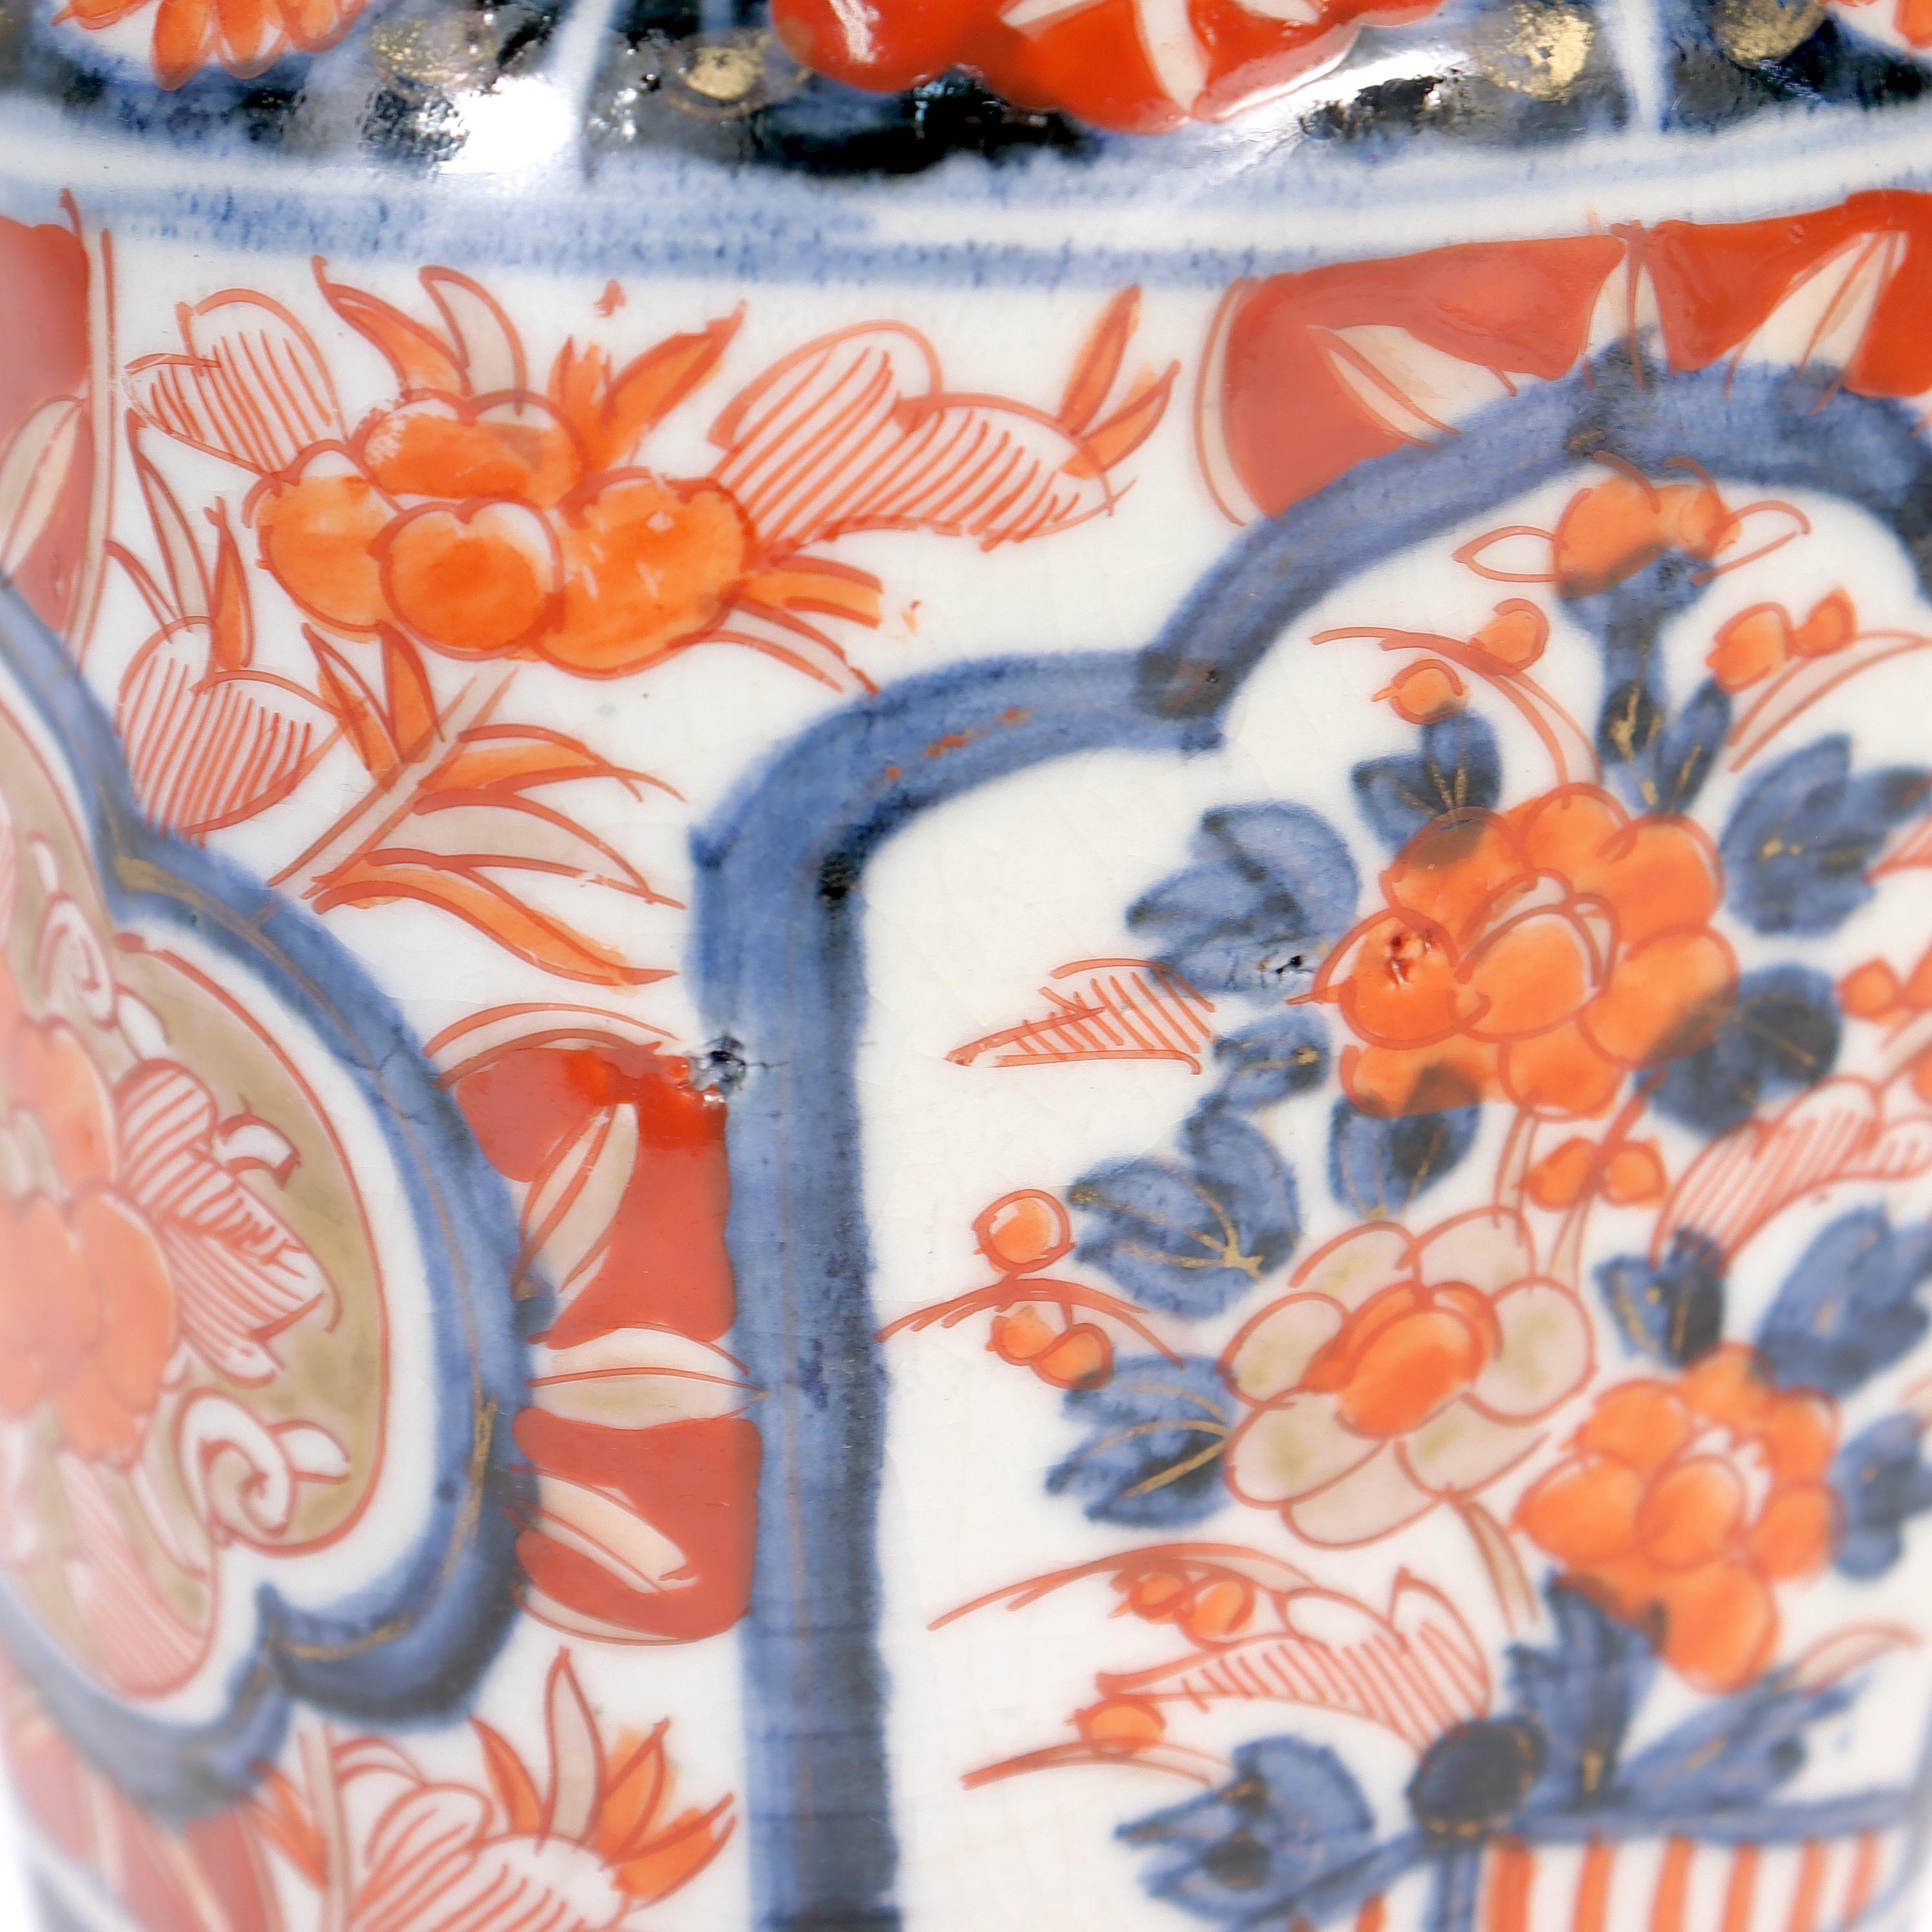 Old or Antique Japanese Imari Porcelain Covered Jar or Urn For Sale 6